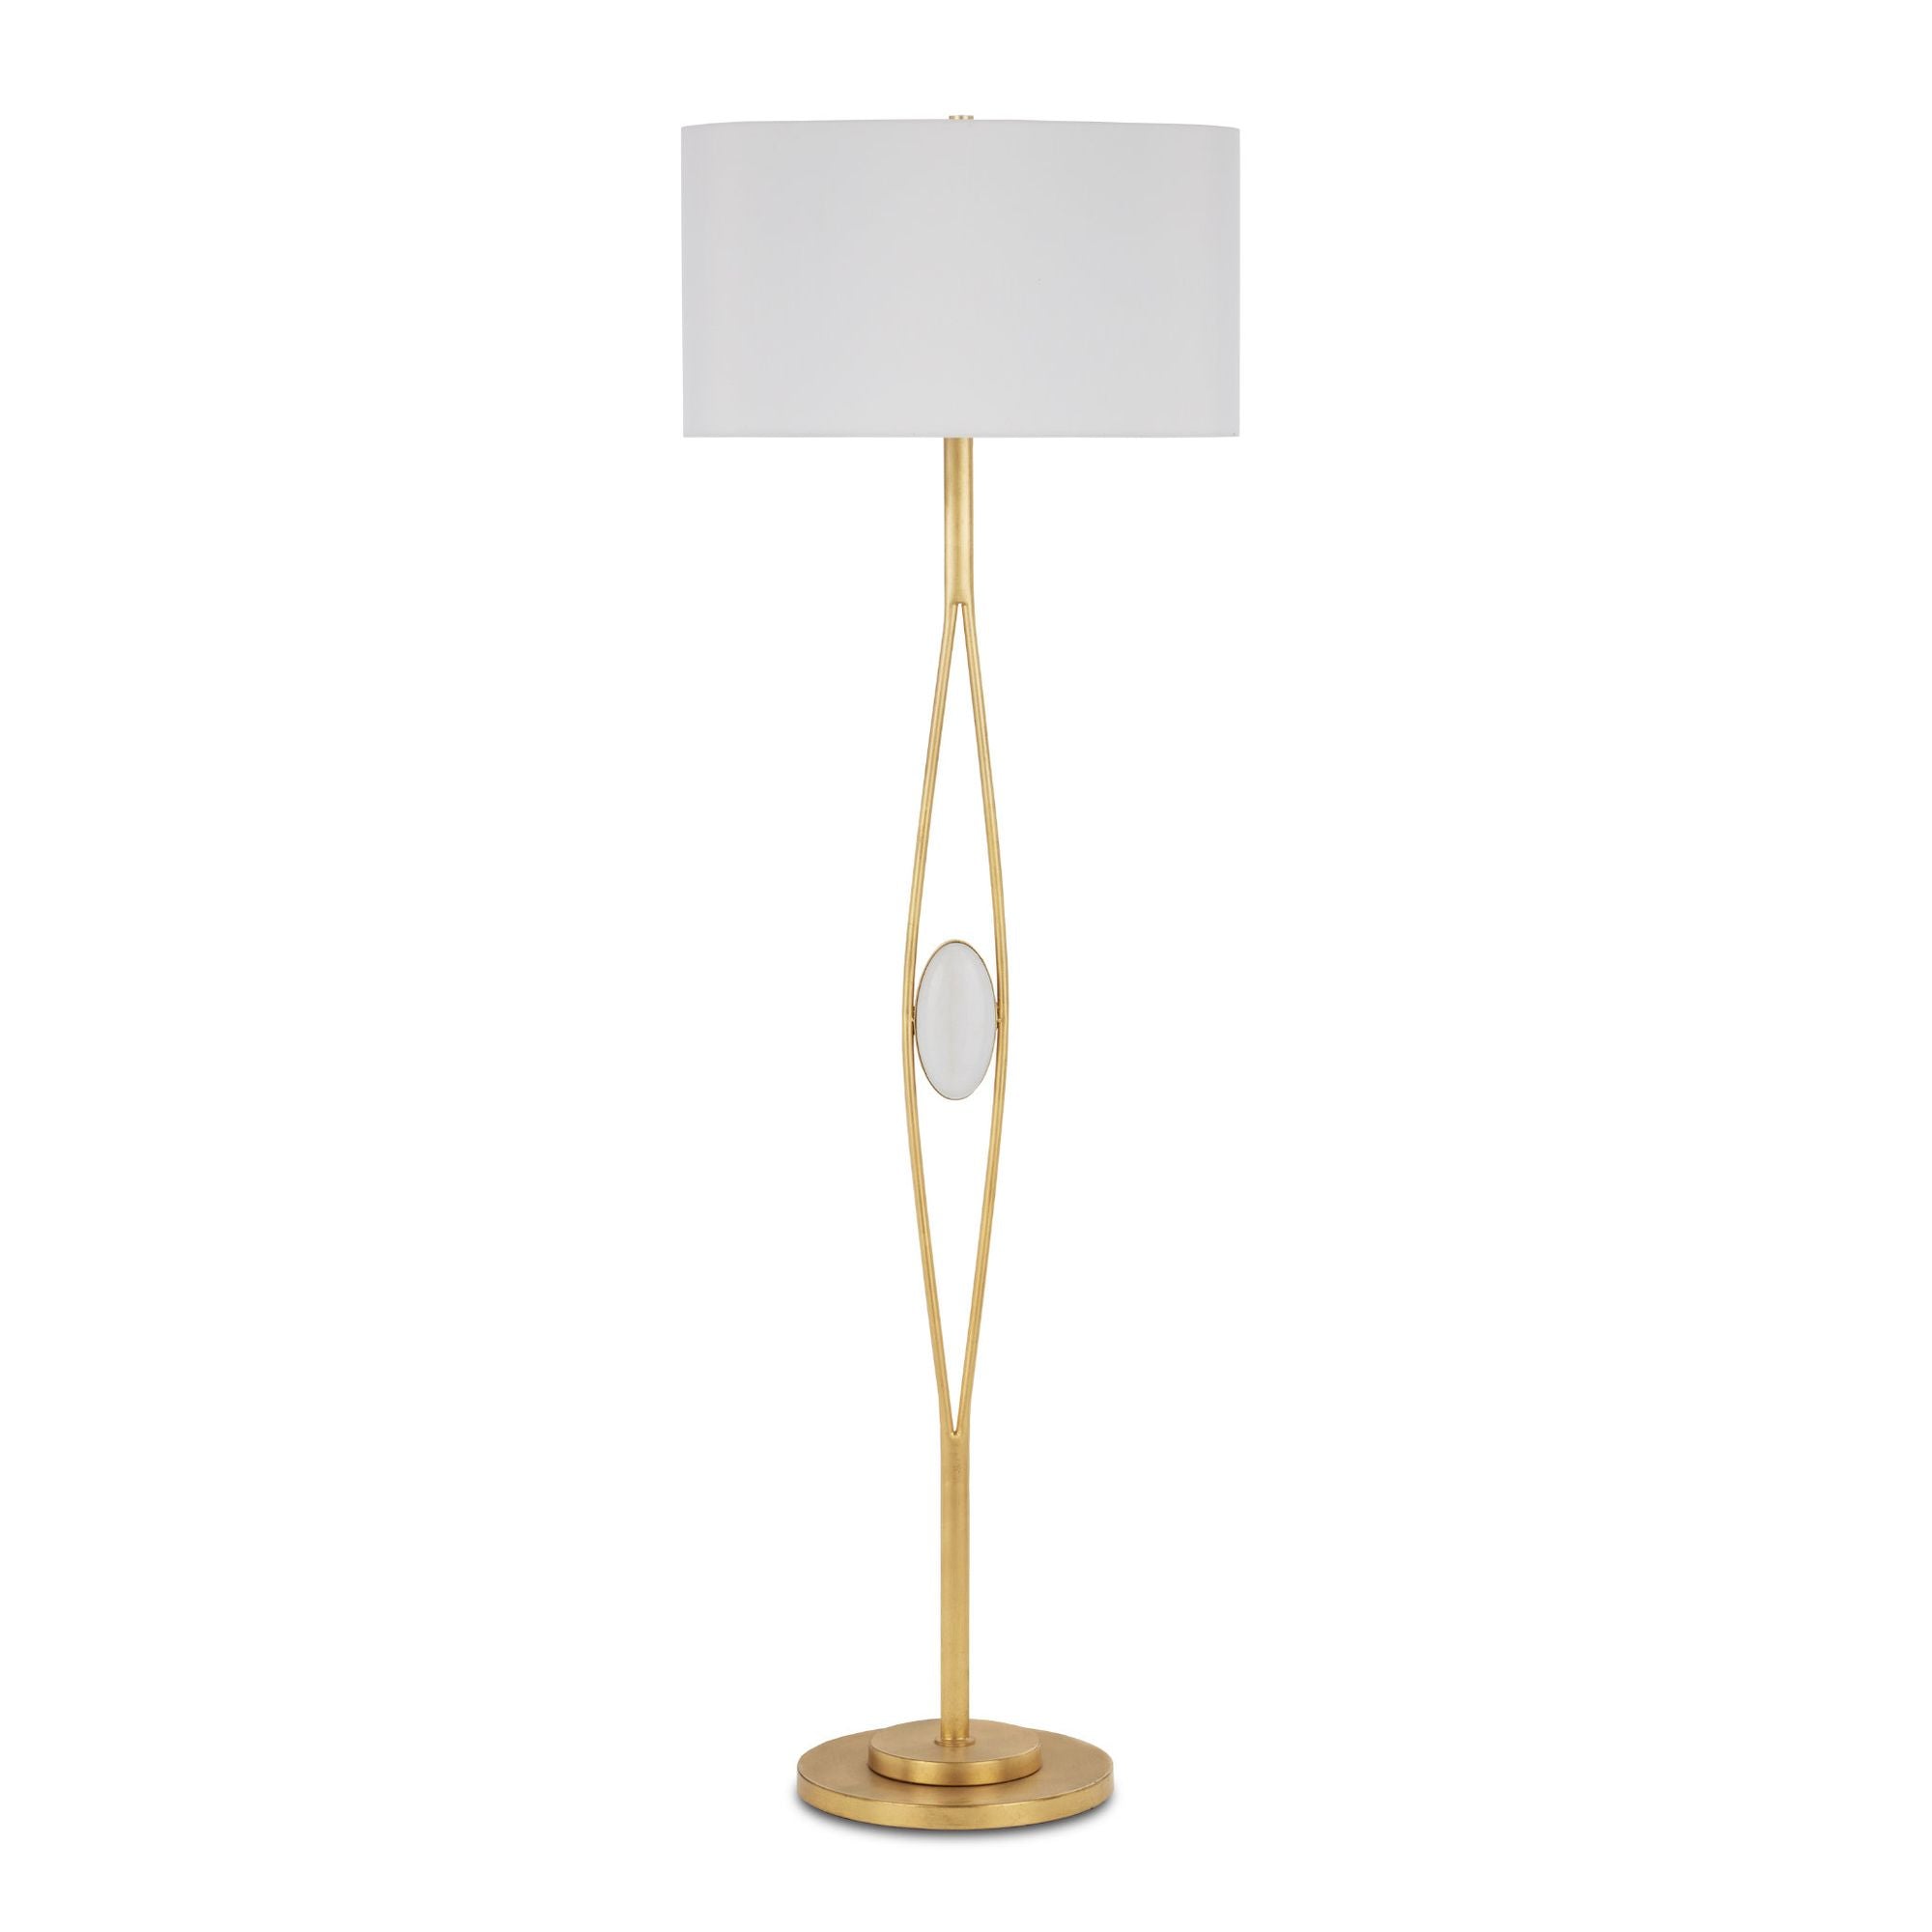 Marlene Gold Floor Lamp - Gold Leaf/White